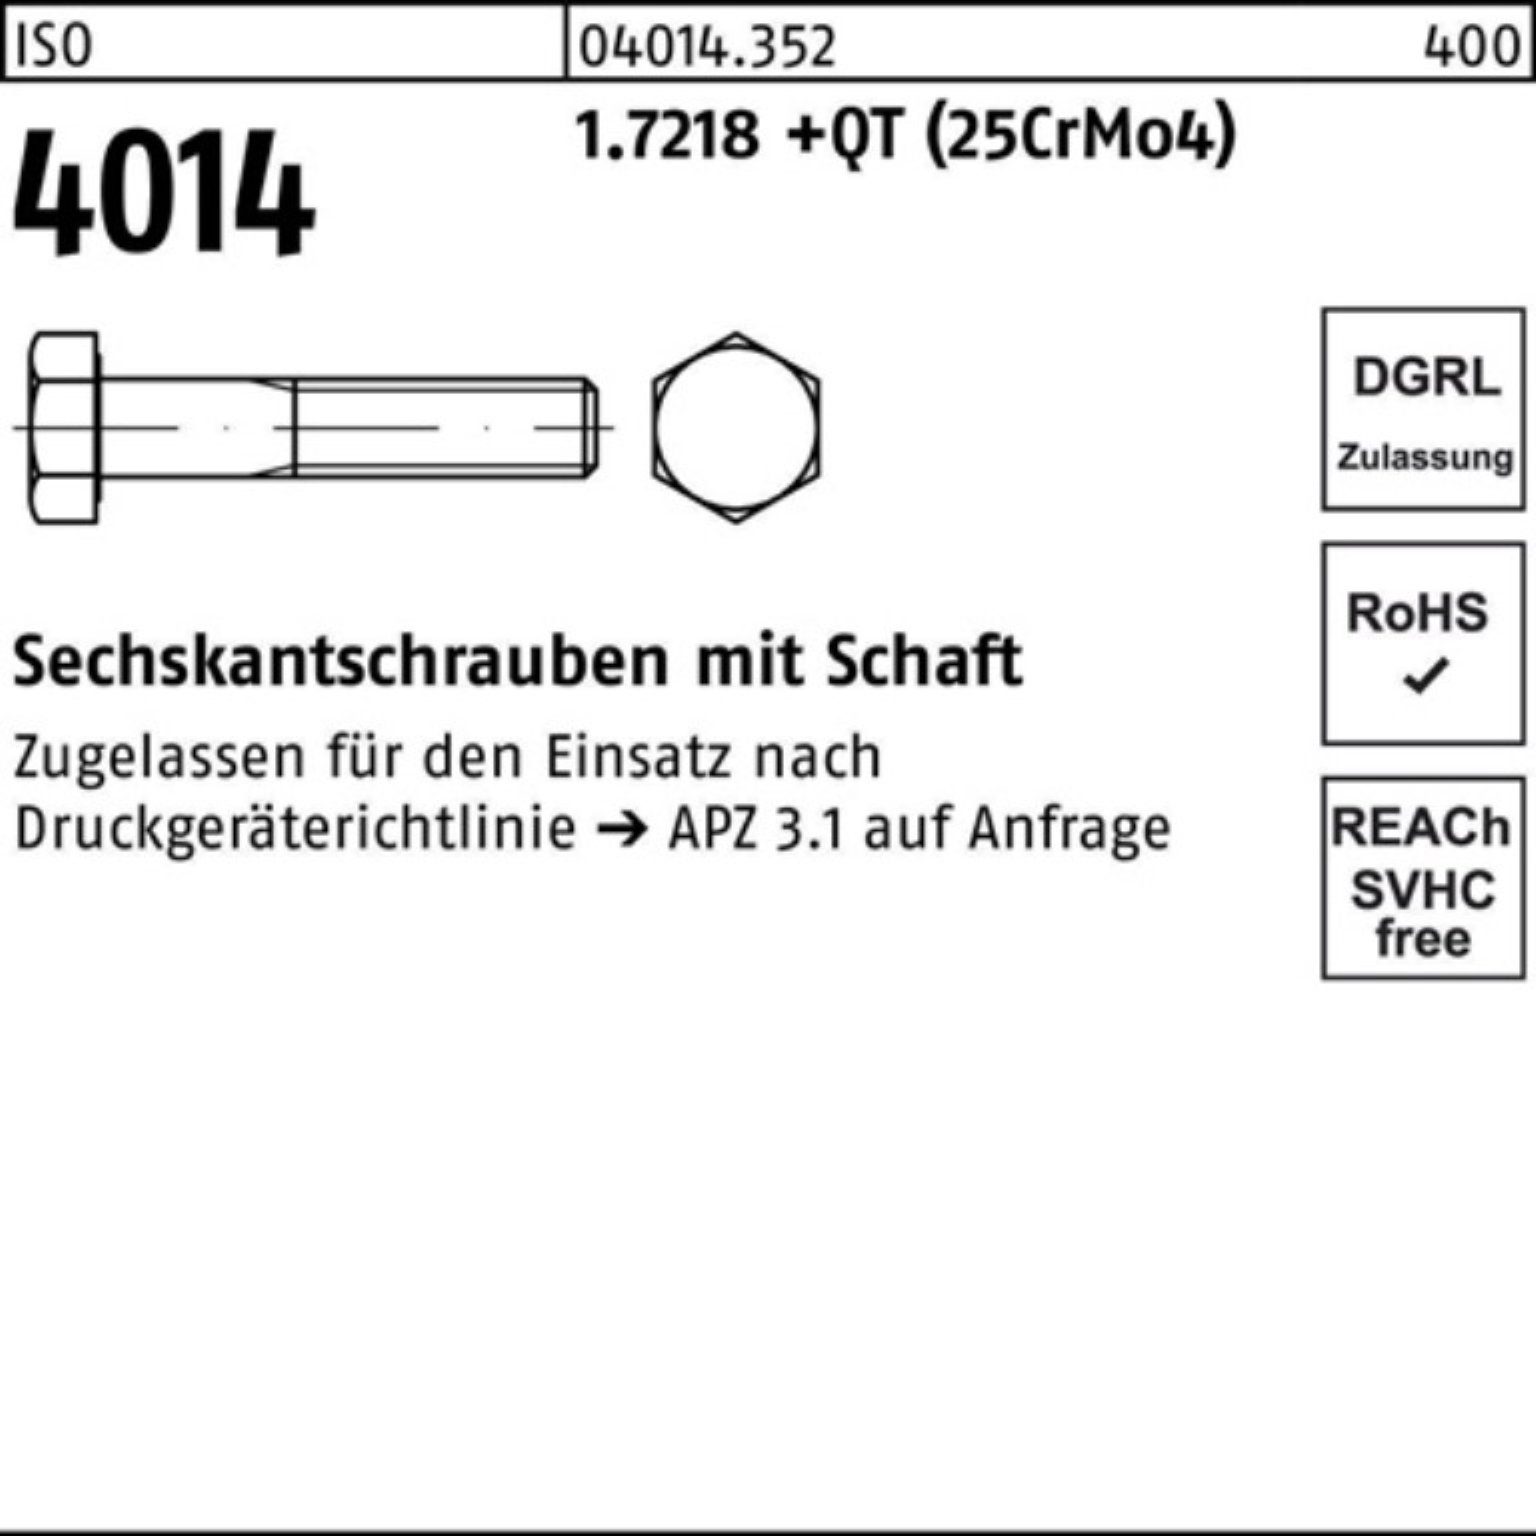 Sechskantschraube 150 Pack Schaft Bufab +QT 100er 4014 1.7218 M20x Sechskantschraube ISO (25Cr